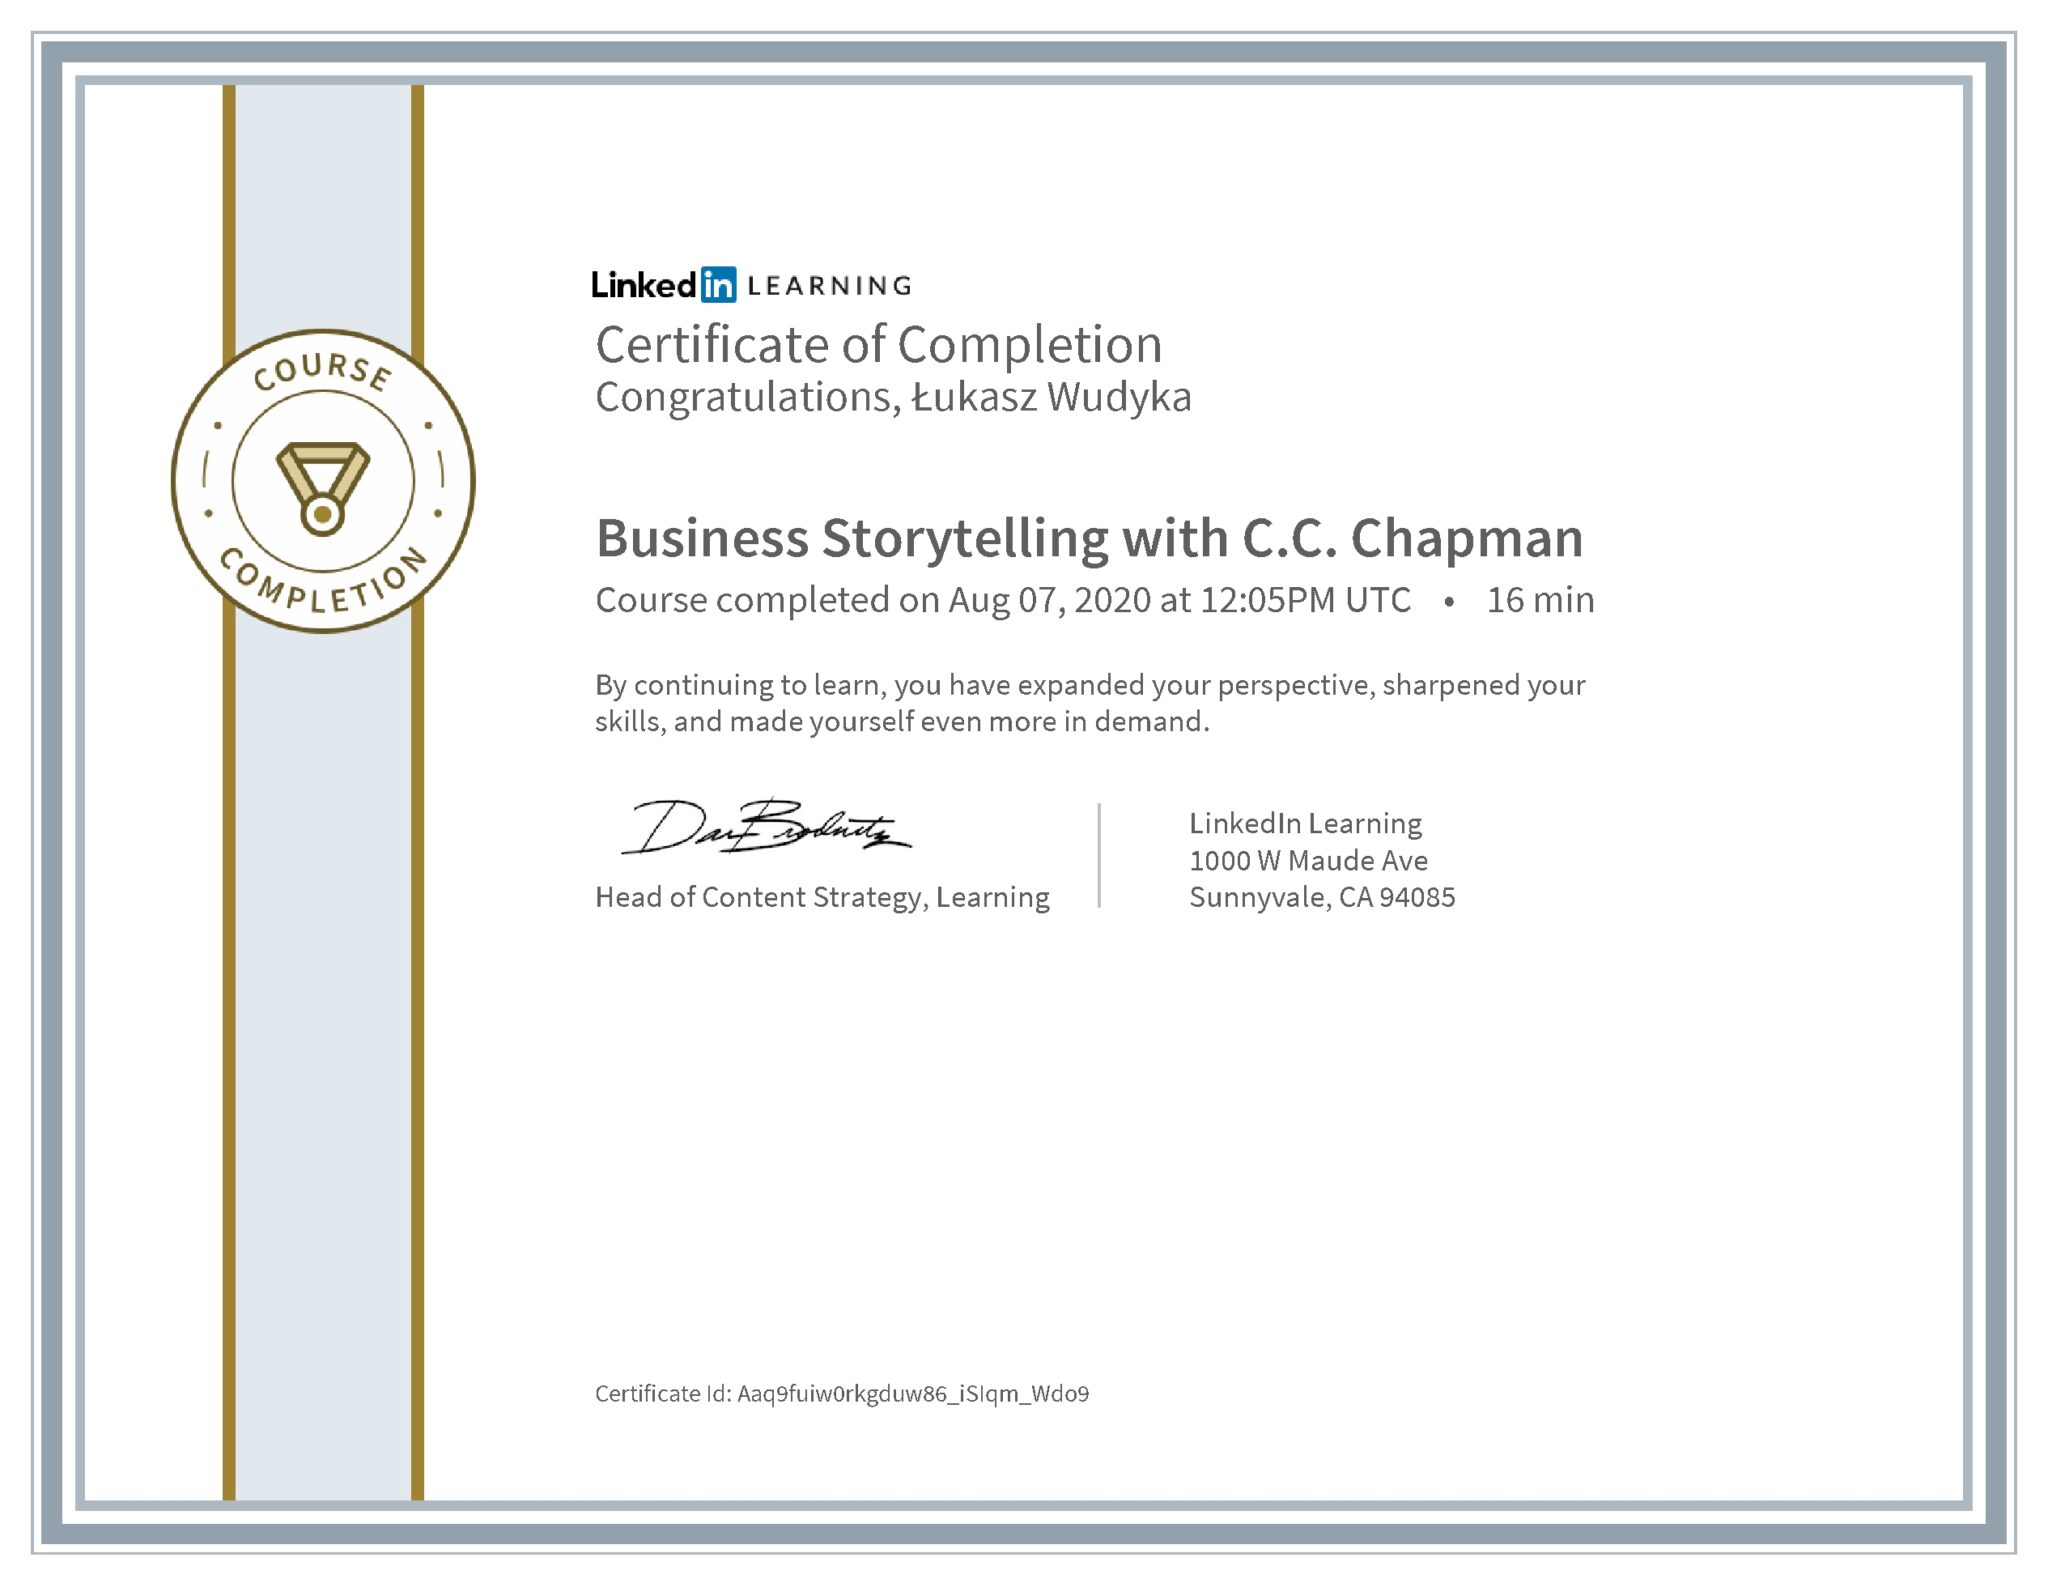 Łukasz Wudyka certyfikat LinkedIn Business Storytelling with C.C. Chapman